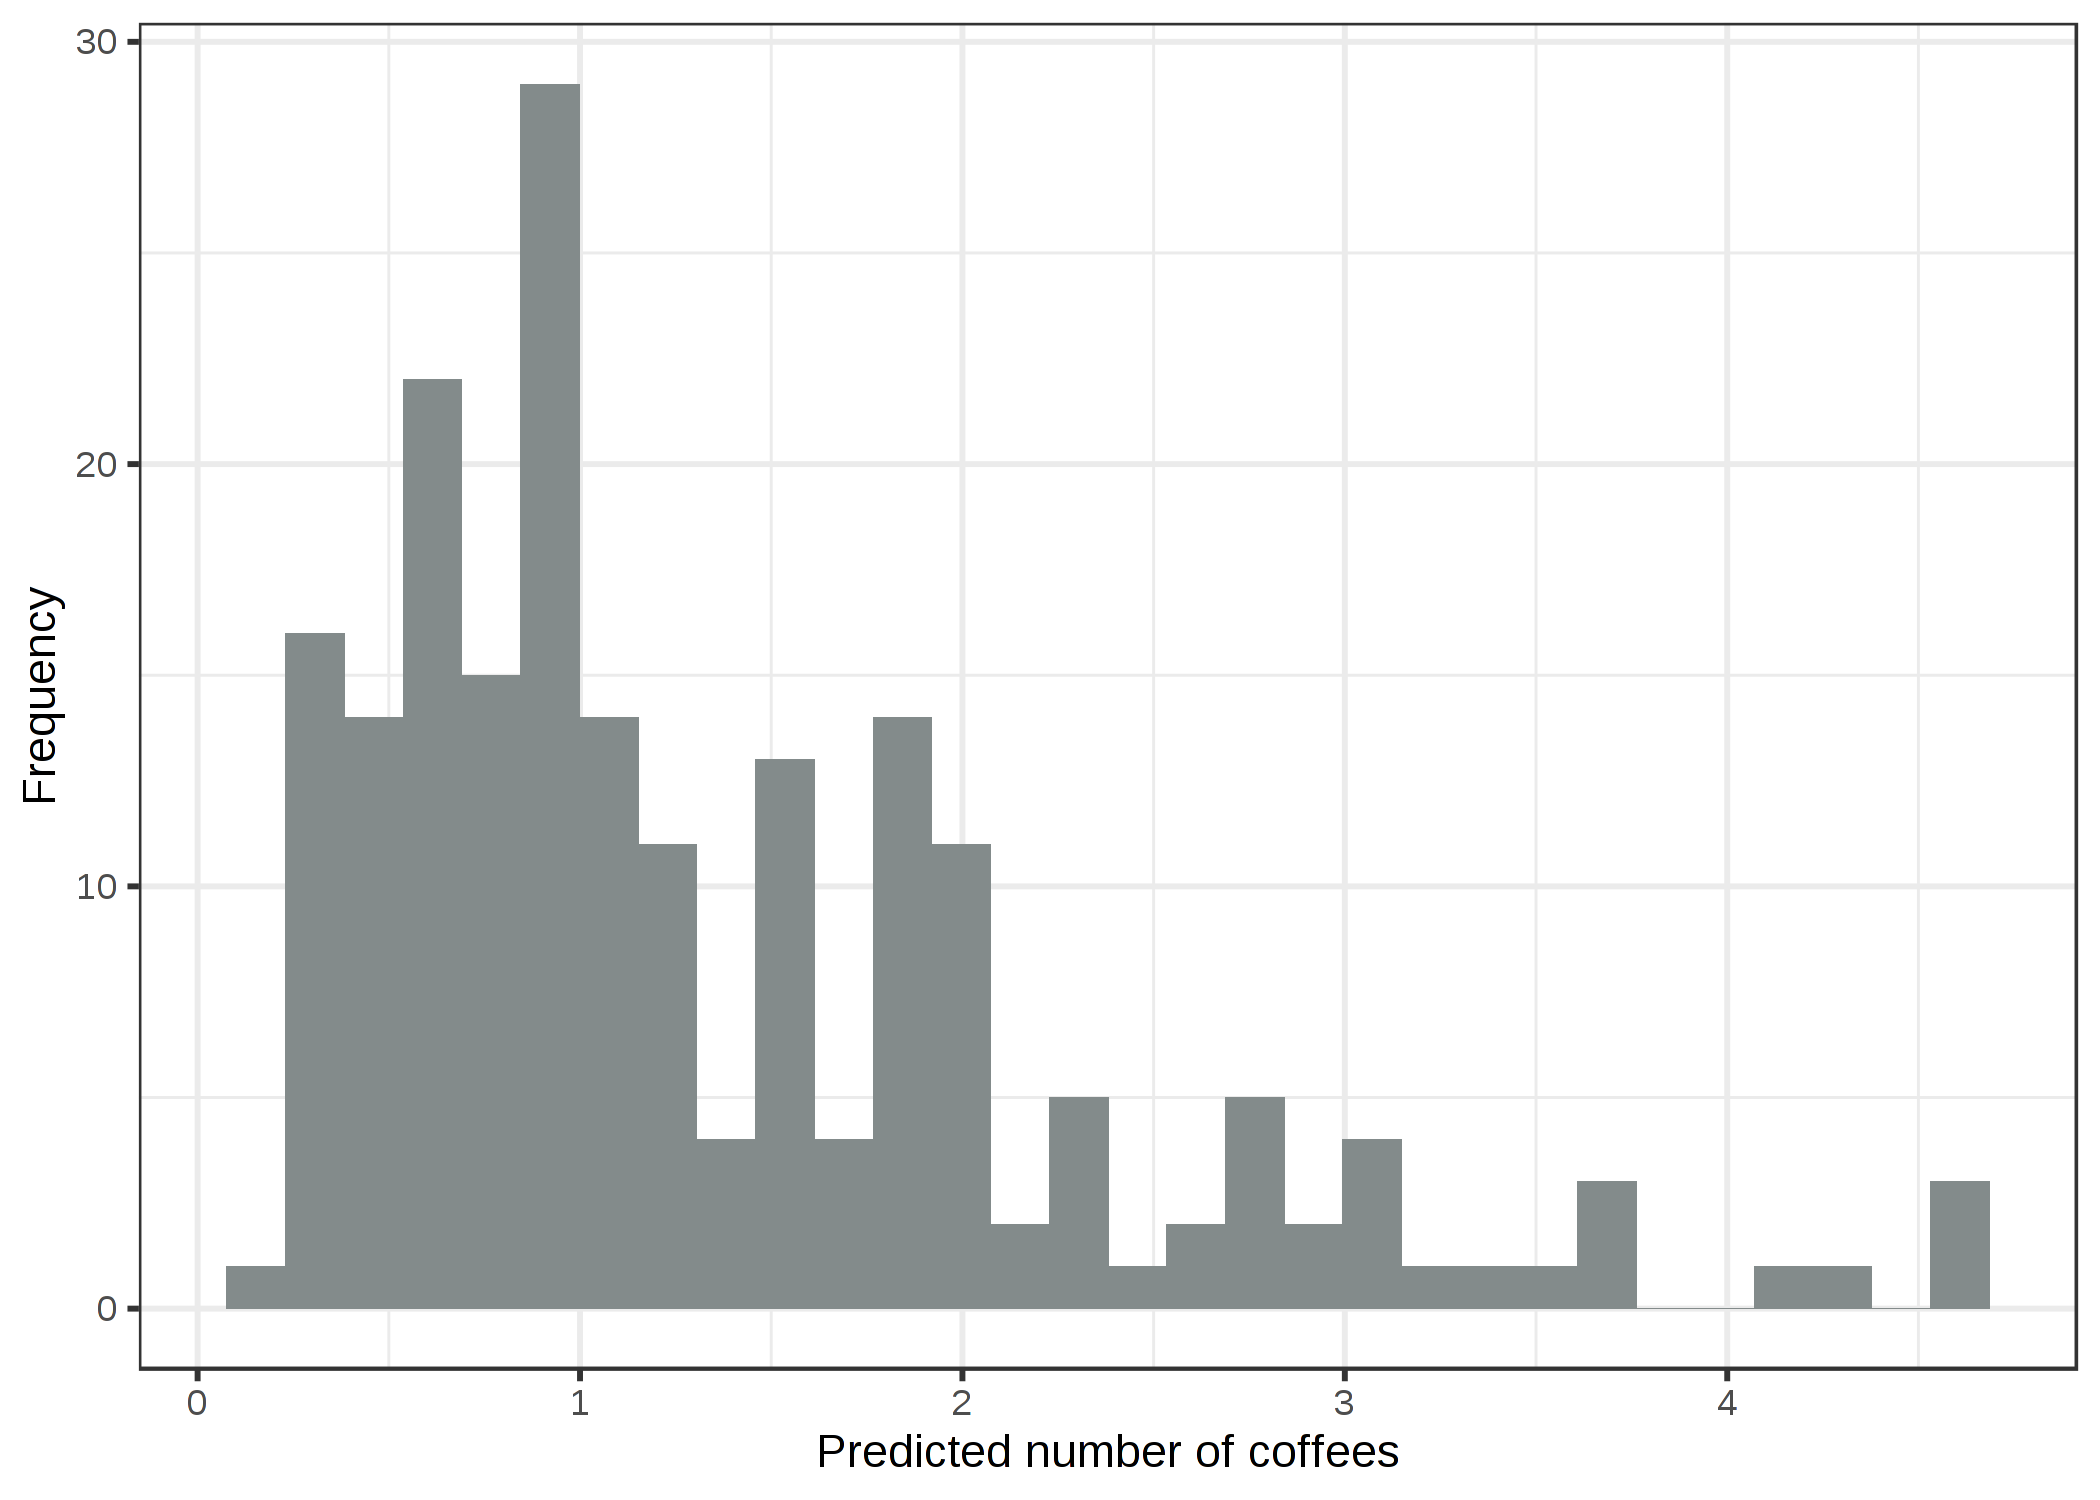 ストレス、睡眠、仕事に応じて予測されたコーヒーを飲む量の予測値。ポアソン分布とlog link に基づいた GLM はこのデータセットに対する適切なモデルです。